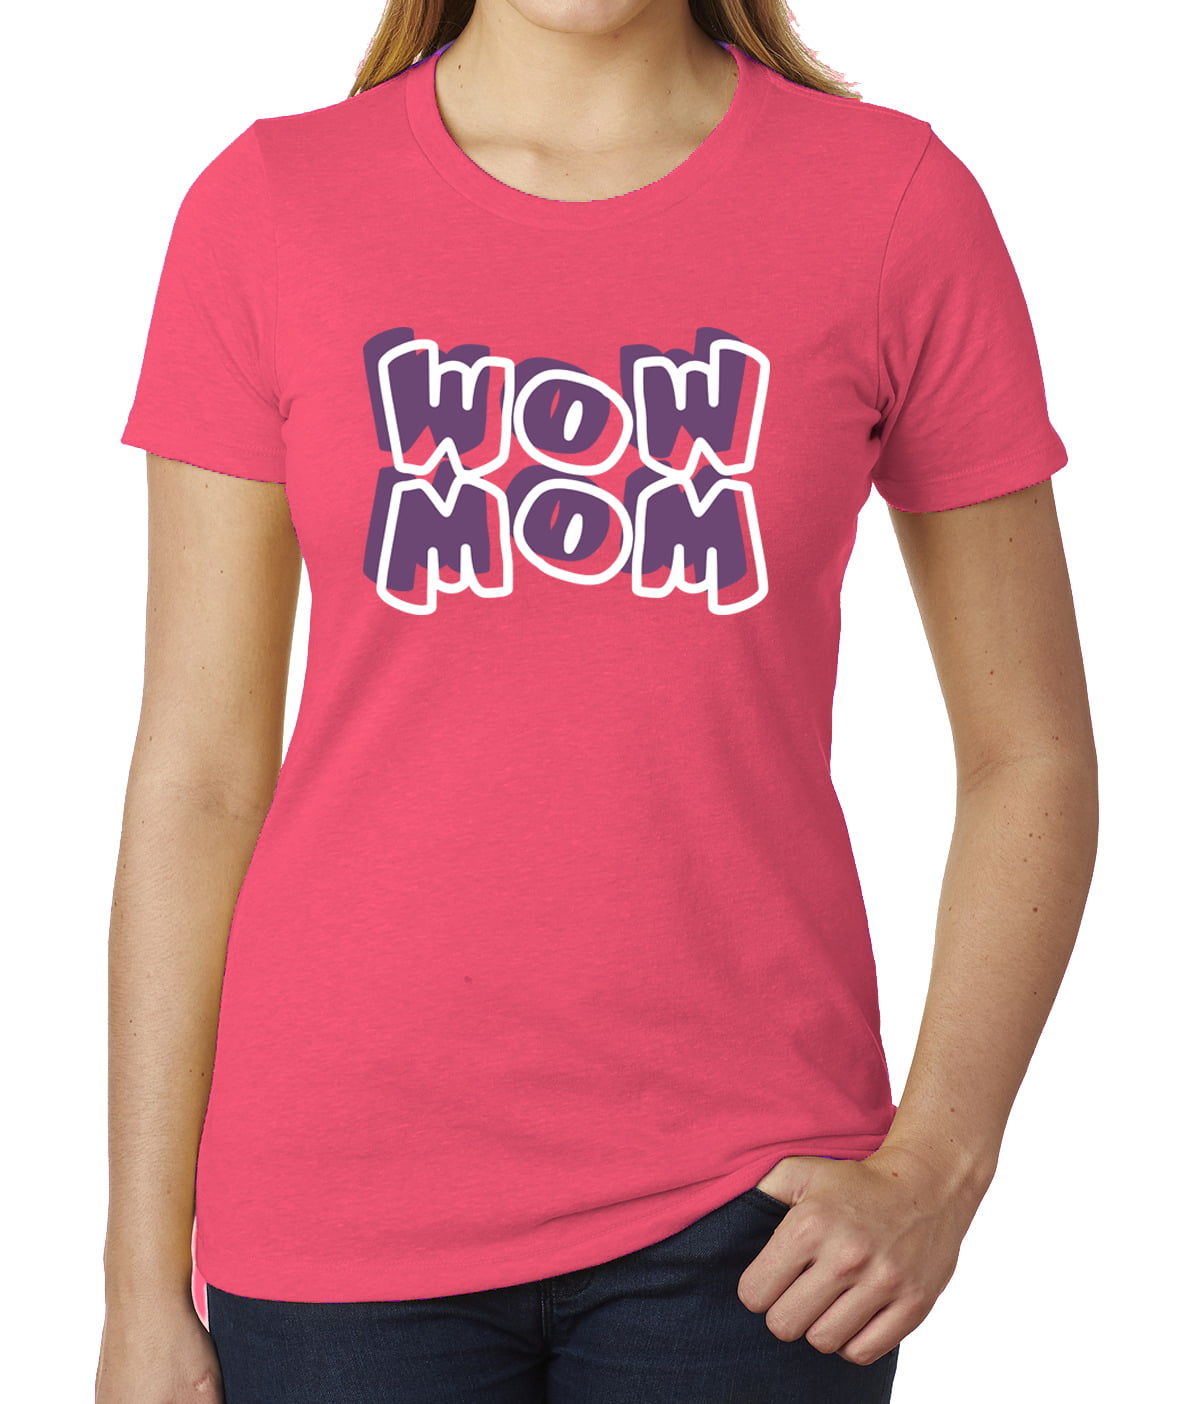 Wow Mom Graphic T-shirts, Ladies Funny T-shirts, Cute Mom Shirts ...